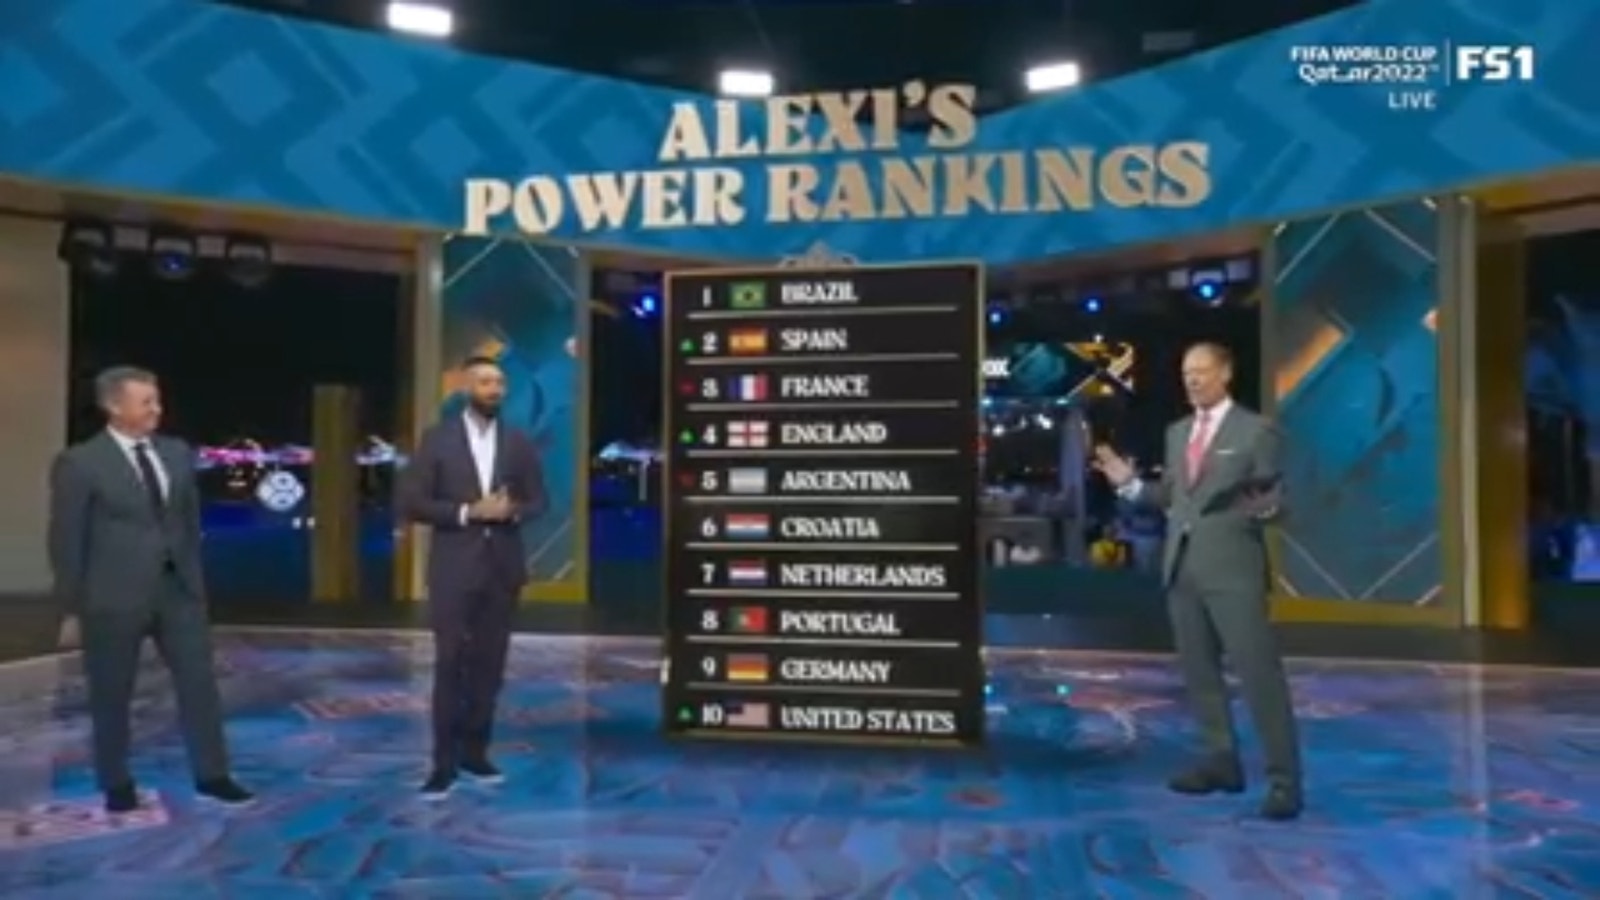 Inghilterra, Spagna e USMNT hanno scalato la classifica di potenza della Coppa del Mondo di Alexi Lalas